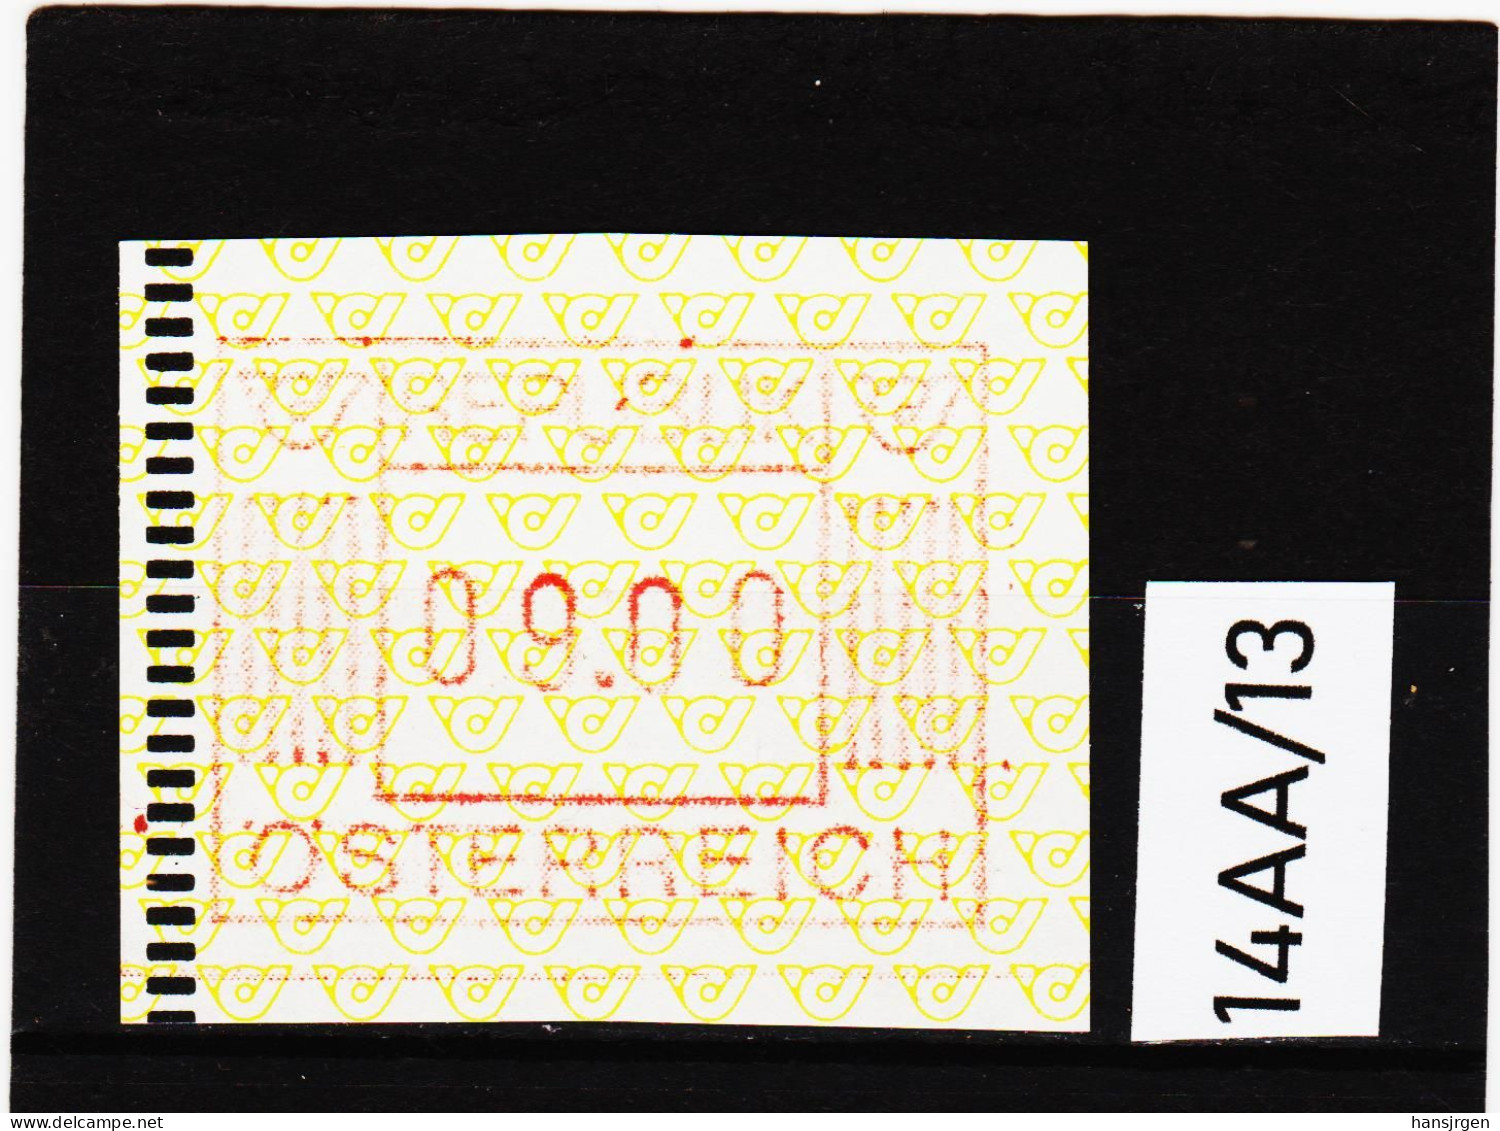 14AA/13  ÖSTERREICH 1983 AUTOMATENMARKEN 1. AUSGABE  9,00 SCHILLING   ** Postfrisch - Automatenmarken [ATM]